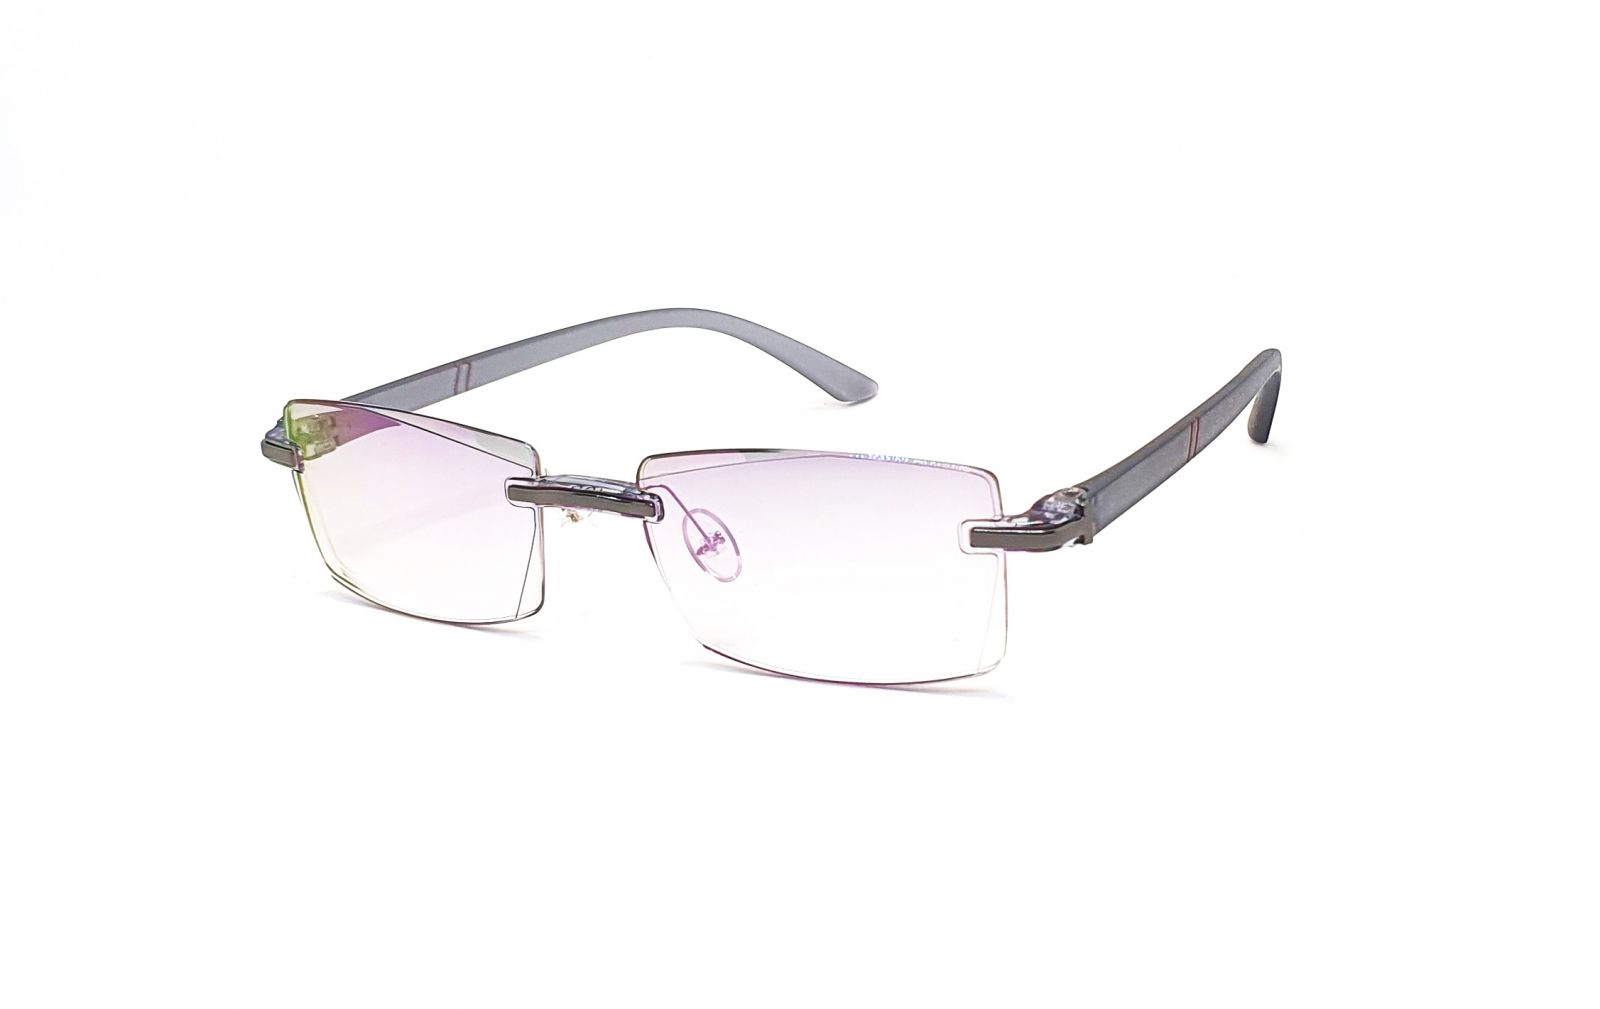 Bezrámečkové dioptrické brýle 346 / -3,50 s antireflexní vrstvou